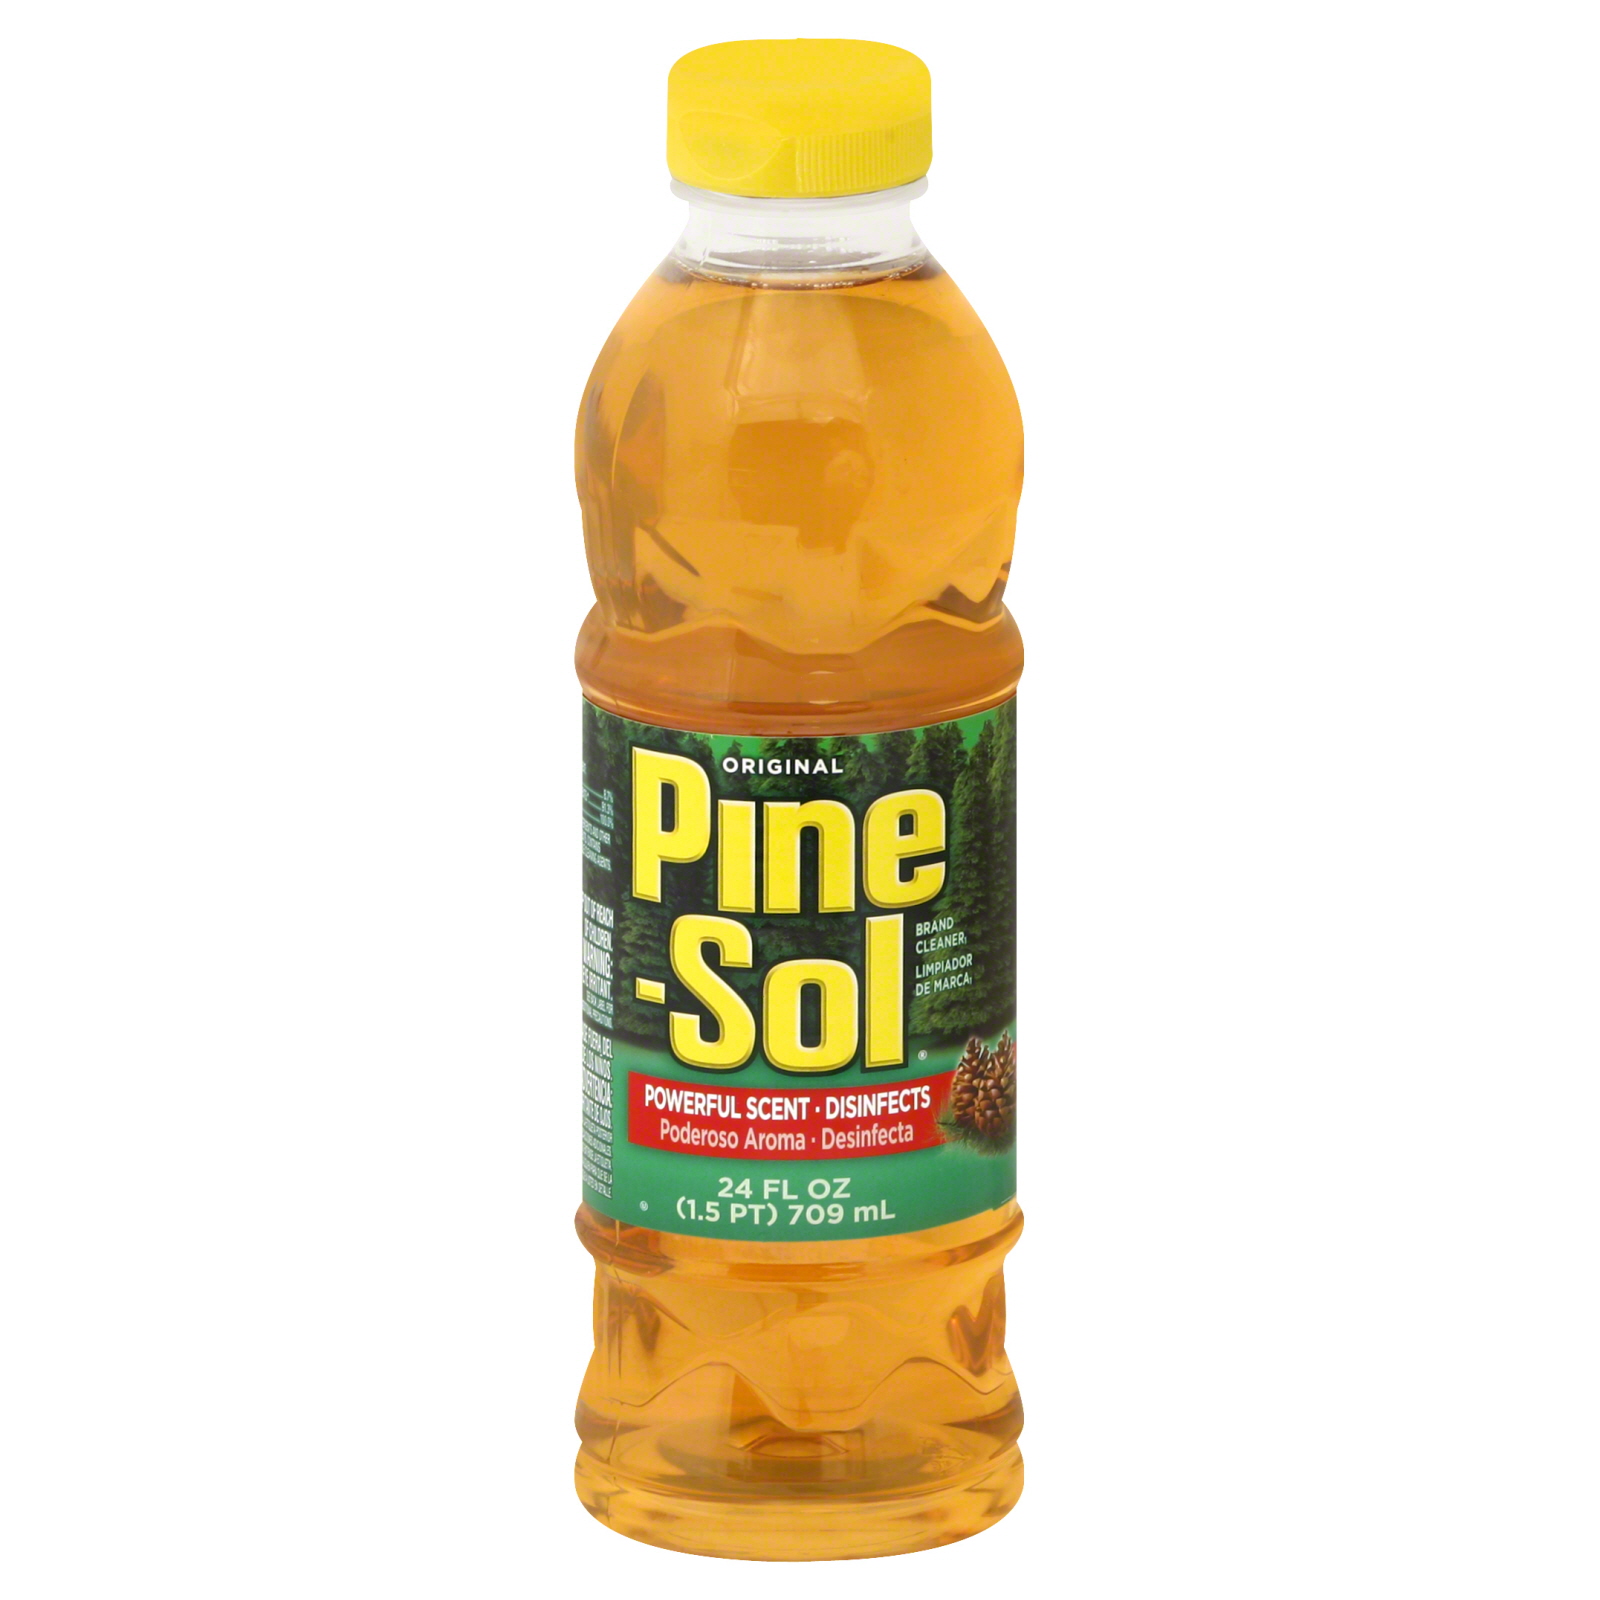 Pine-Sol All Purpose Cleaner, Original 28 fl oz (1.75 pt) 828 ml